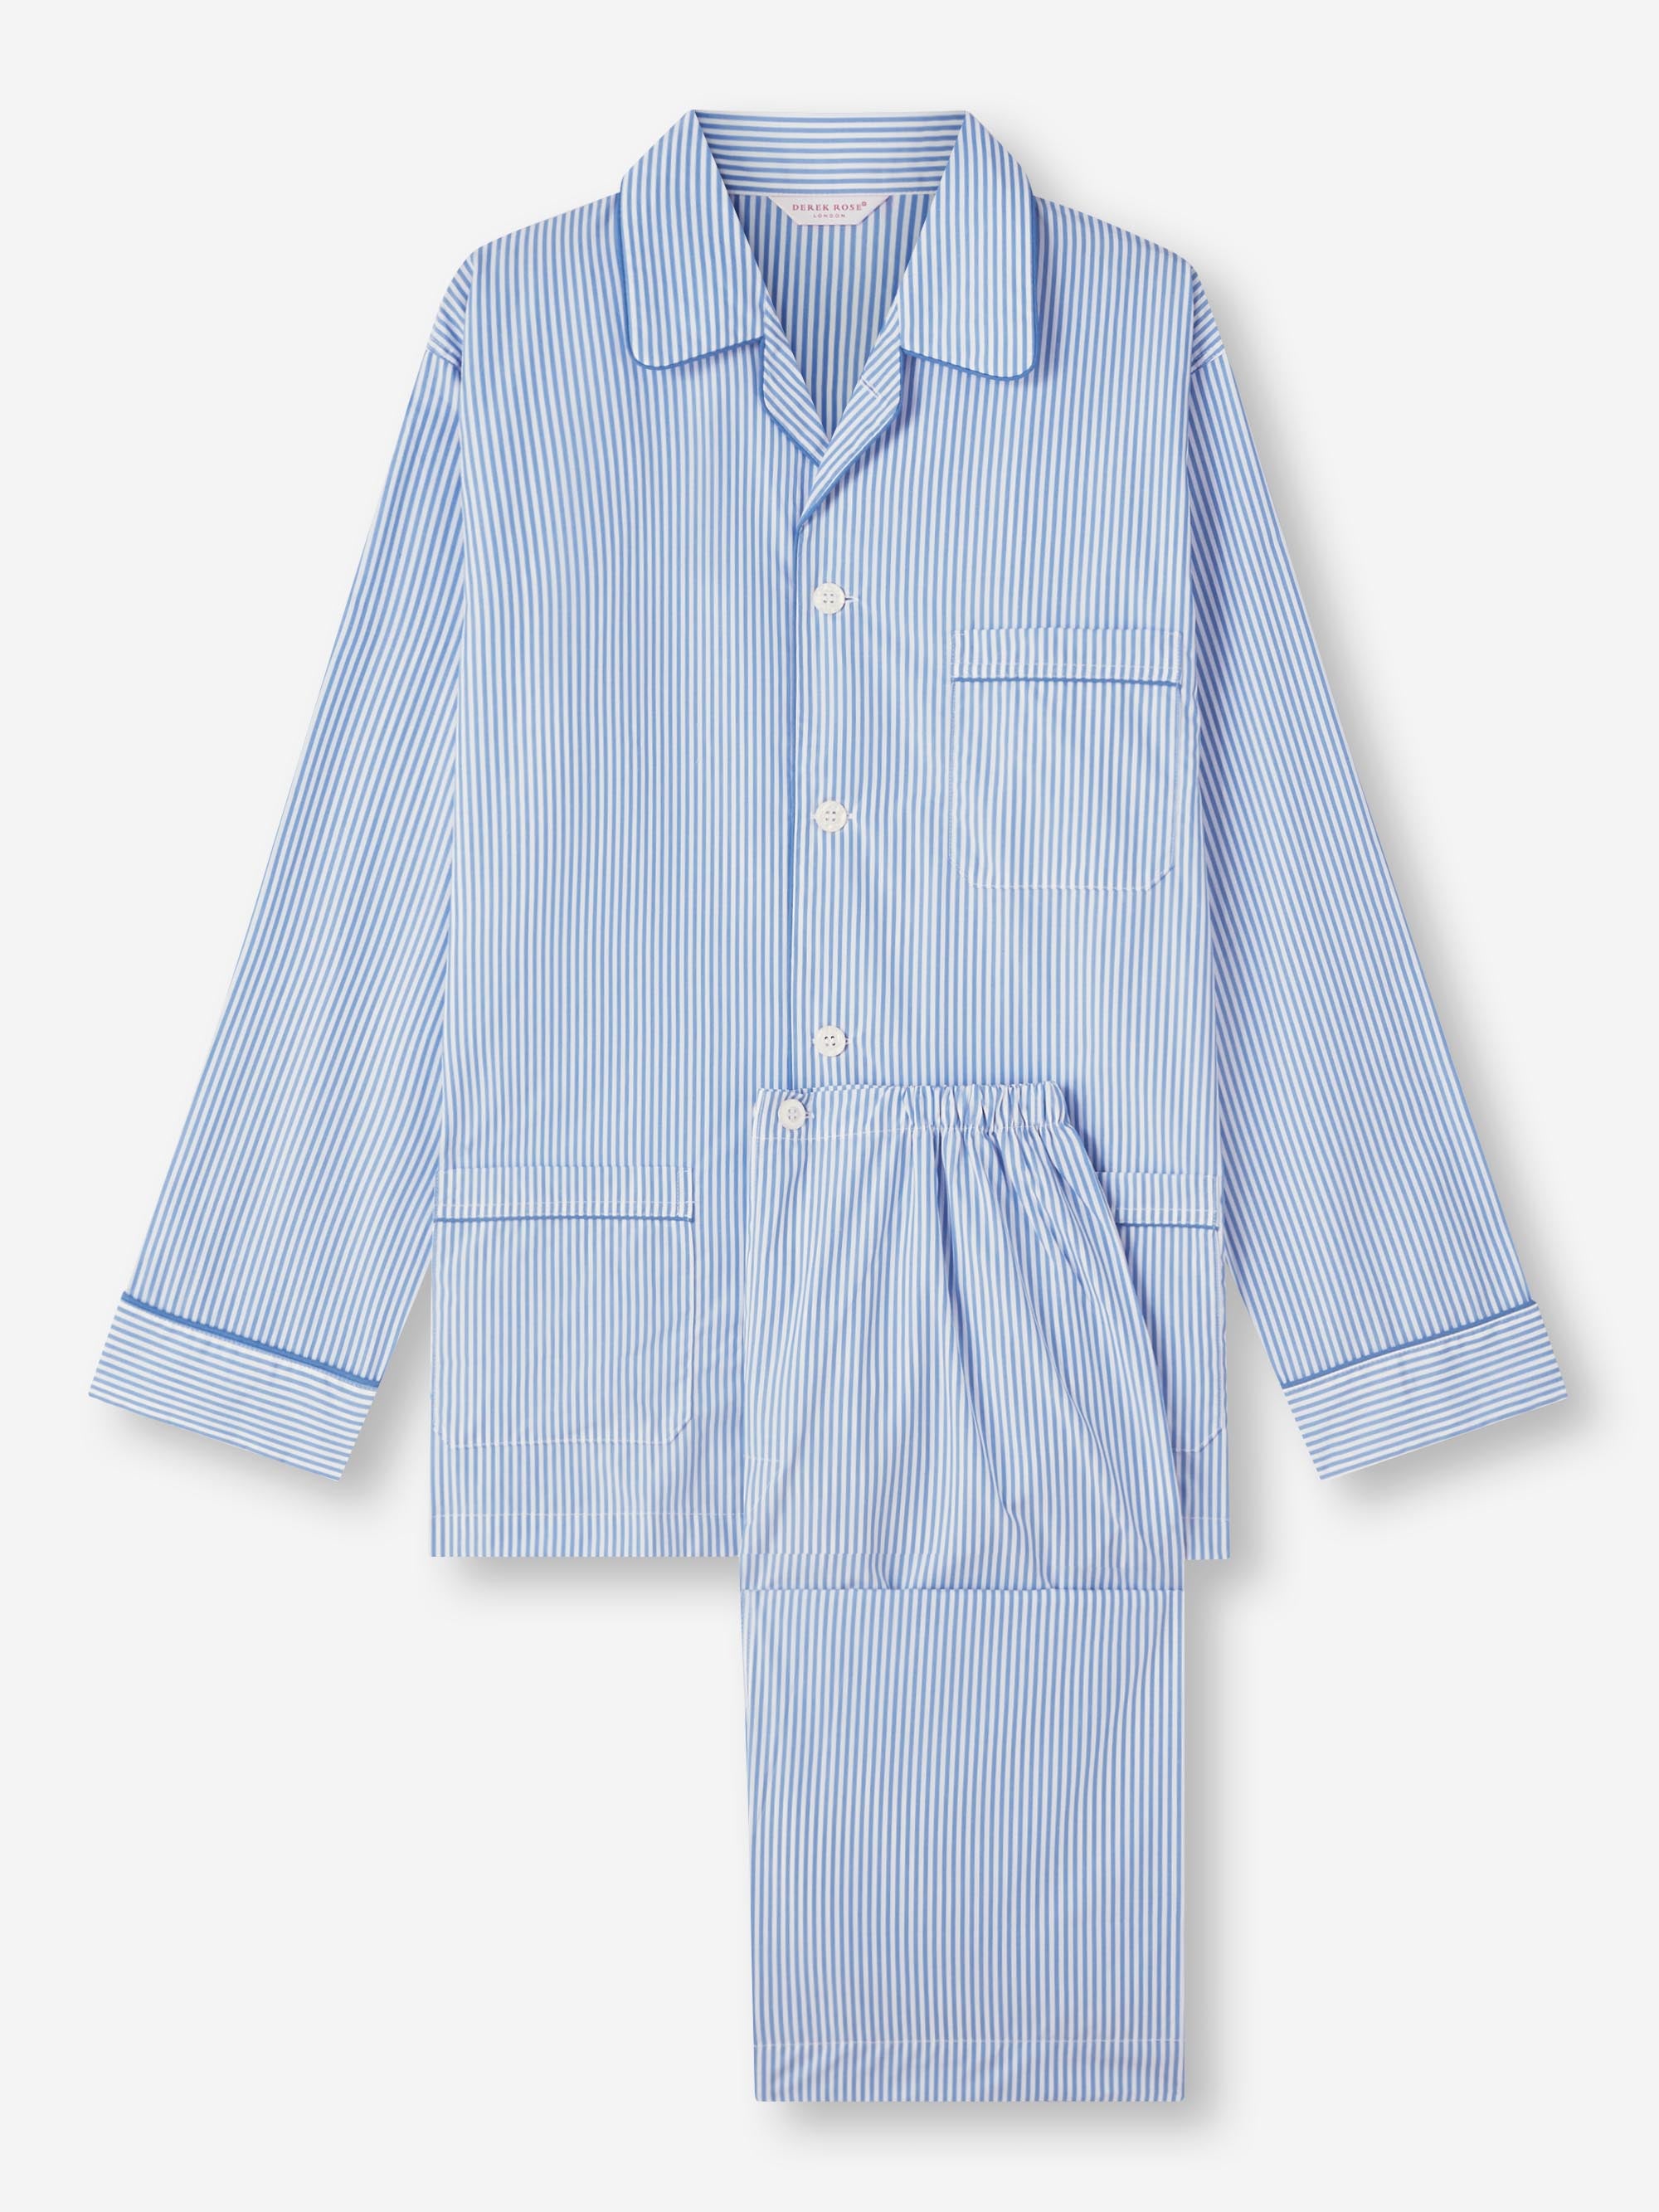 Men's Classic Fit Pyjamas James Cotton Blue